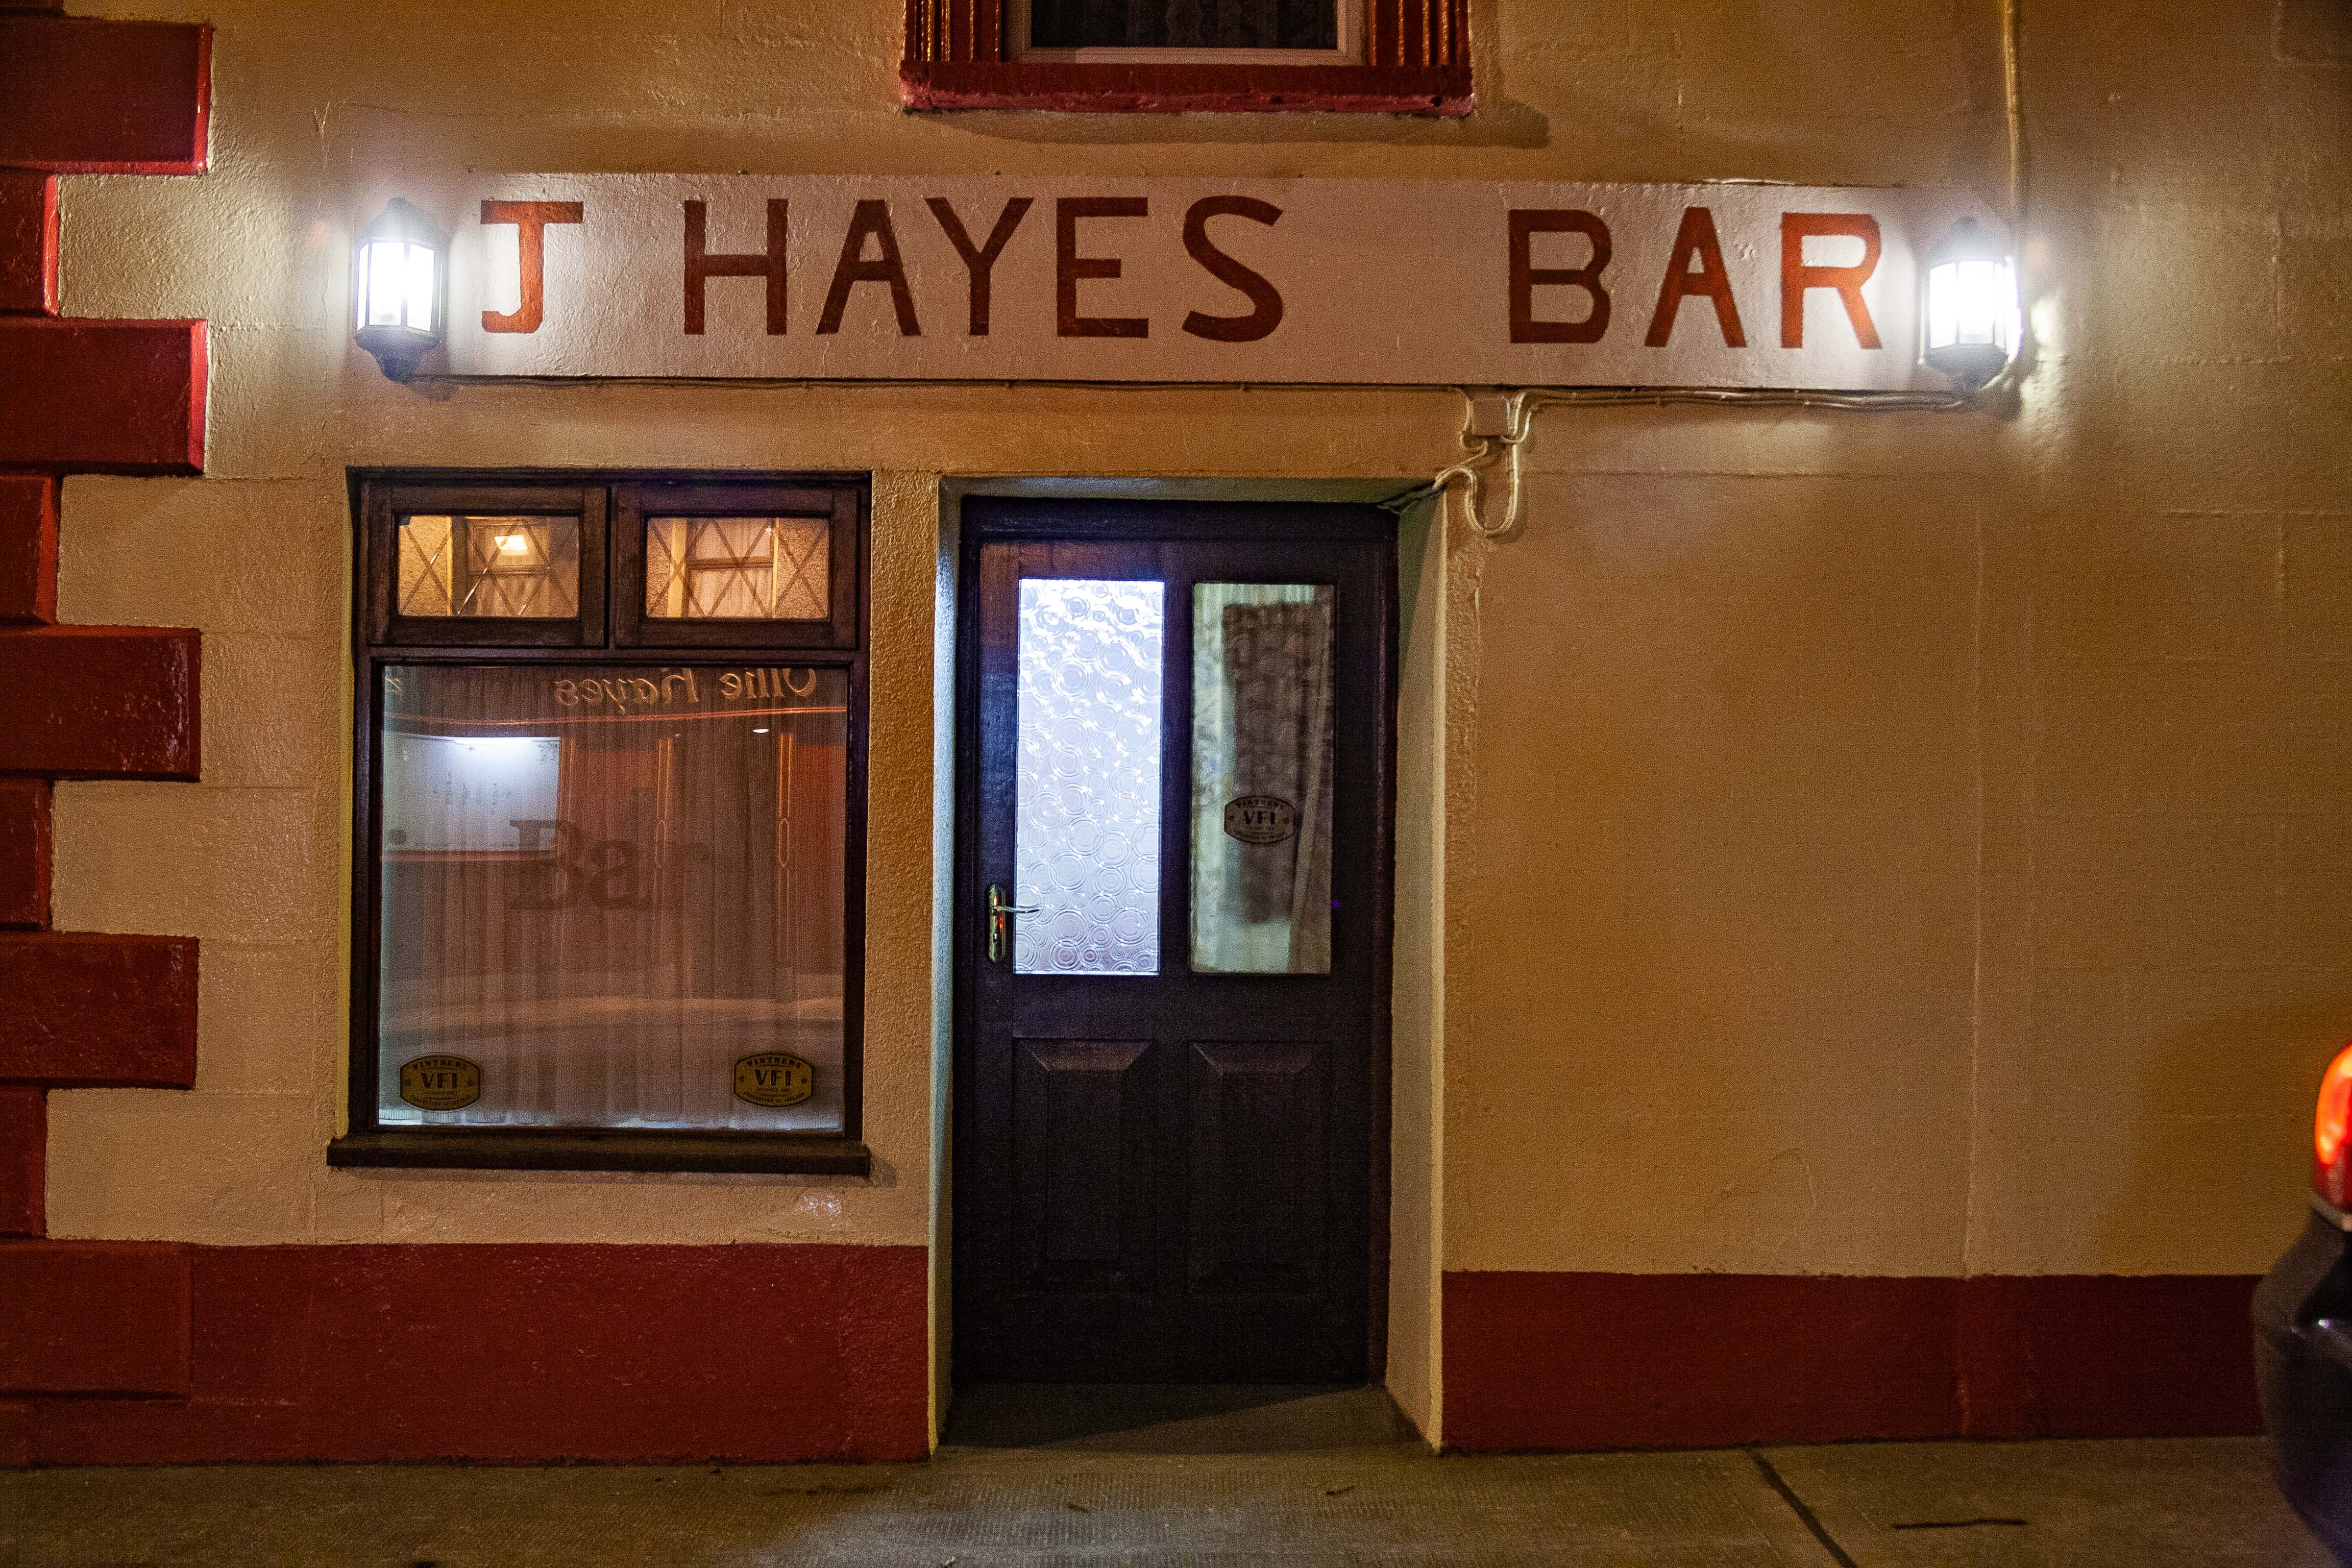 Ireland, Laois Prov, J Hayes Bar, 2009, IMG 0339